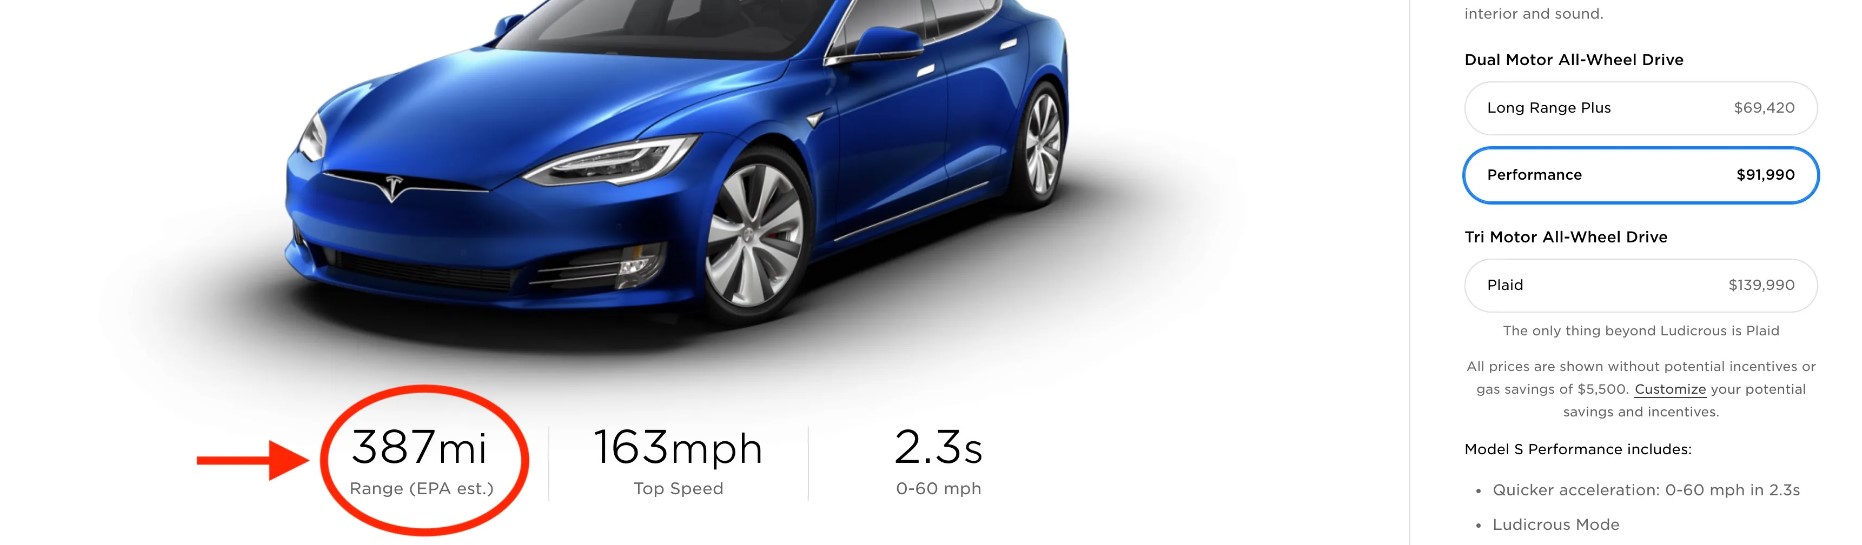 Tesla Model S Features